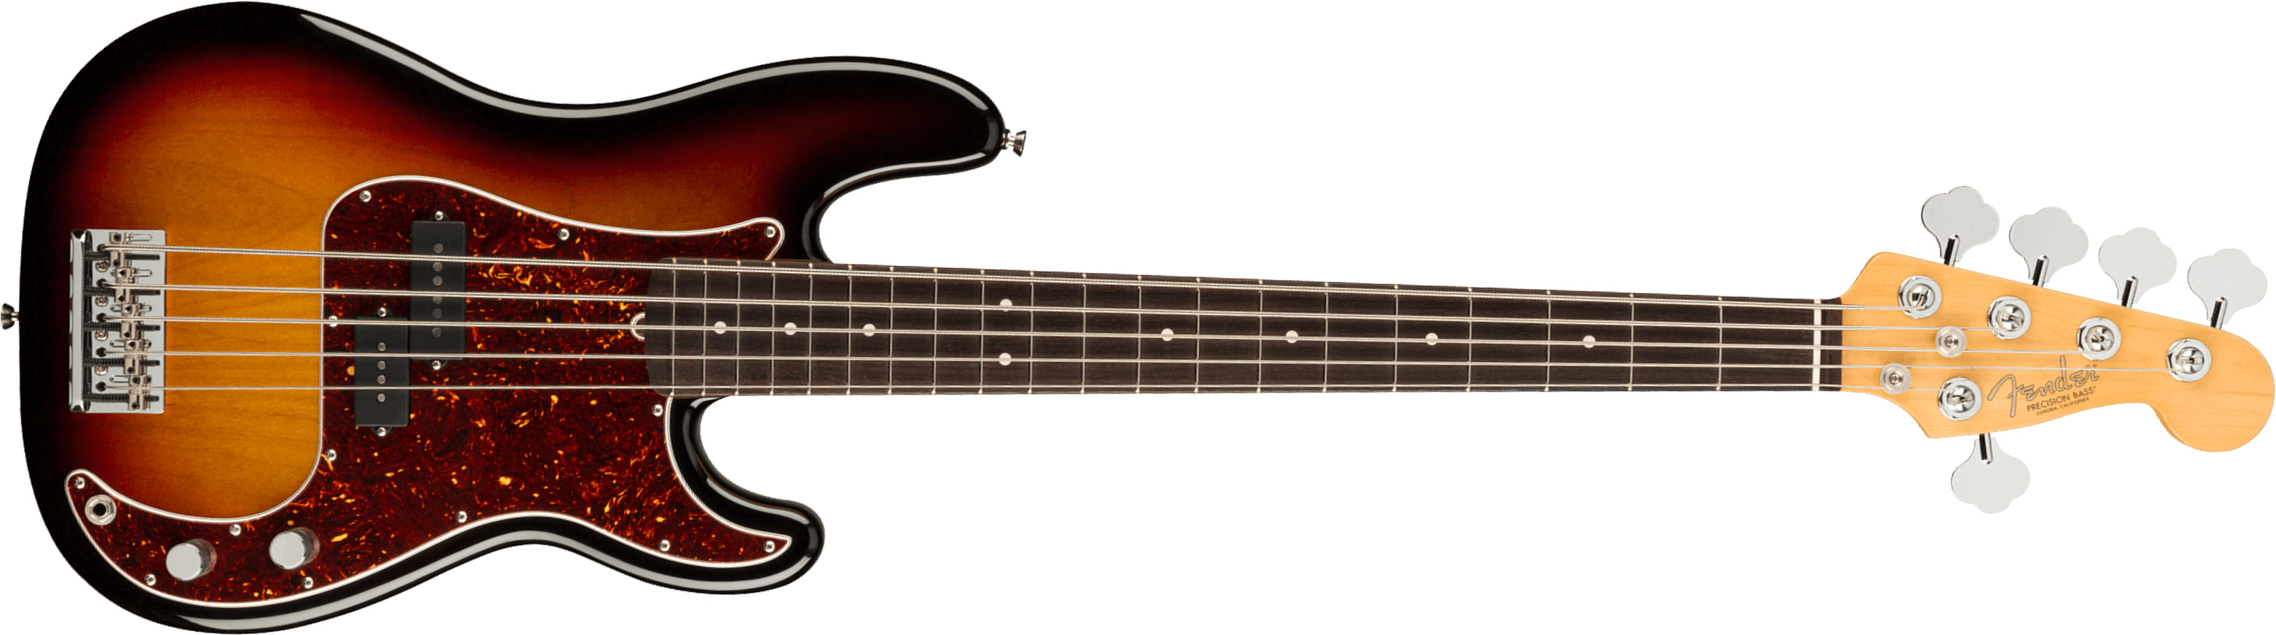 Fender Precision Bass V American Professional Ii Usa 5-cordes Rw - 3-color Sunburst - Solidbody E-bass - Main picture